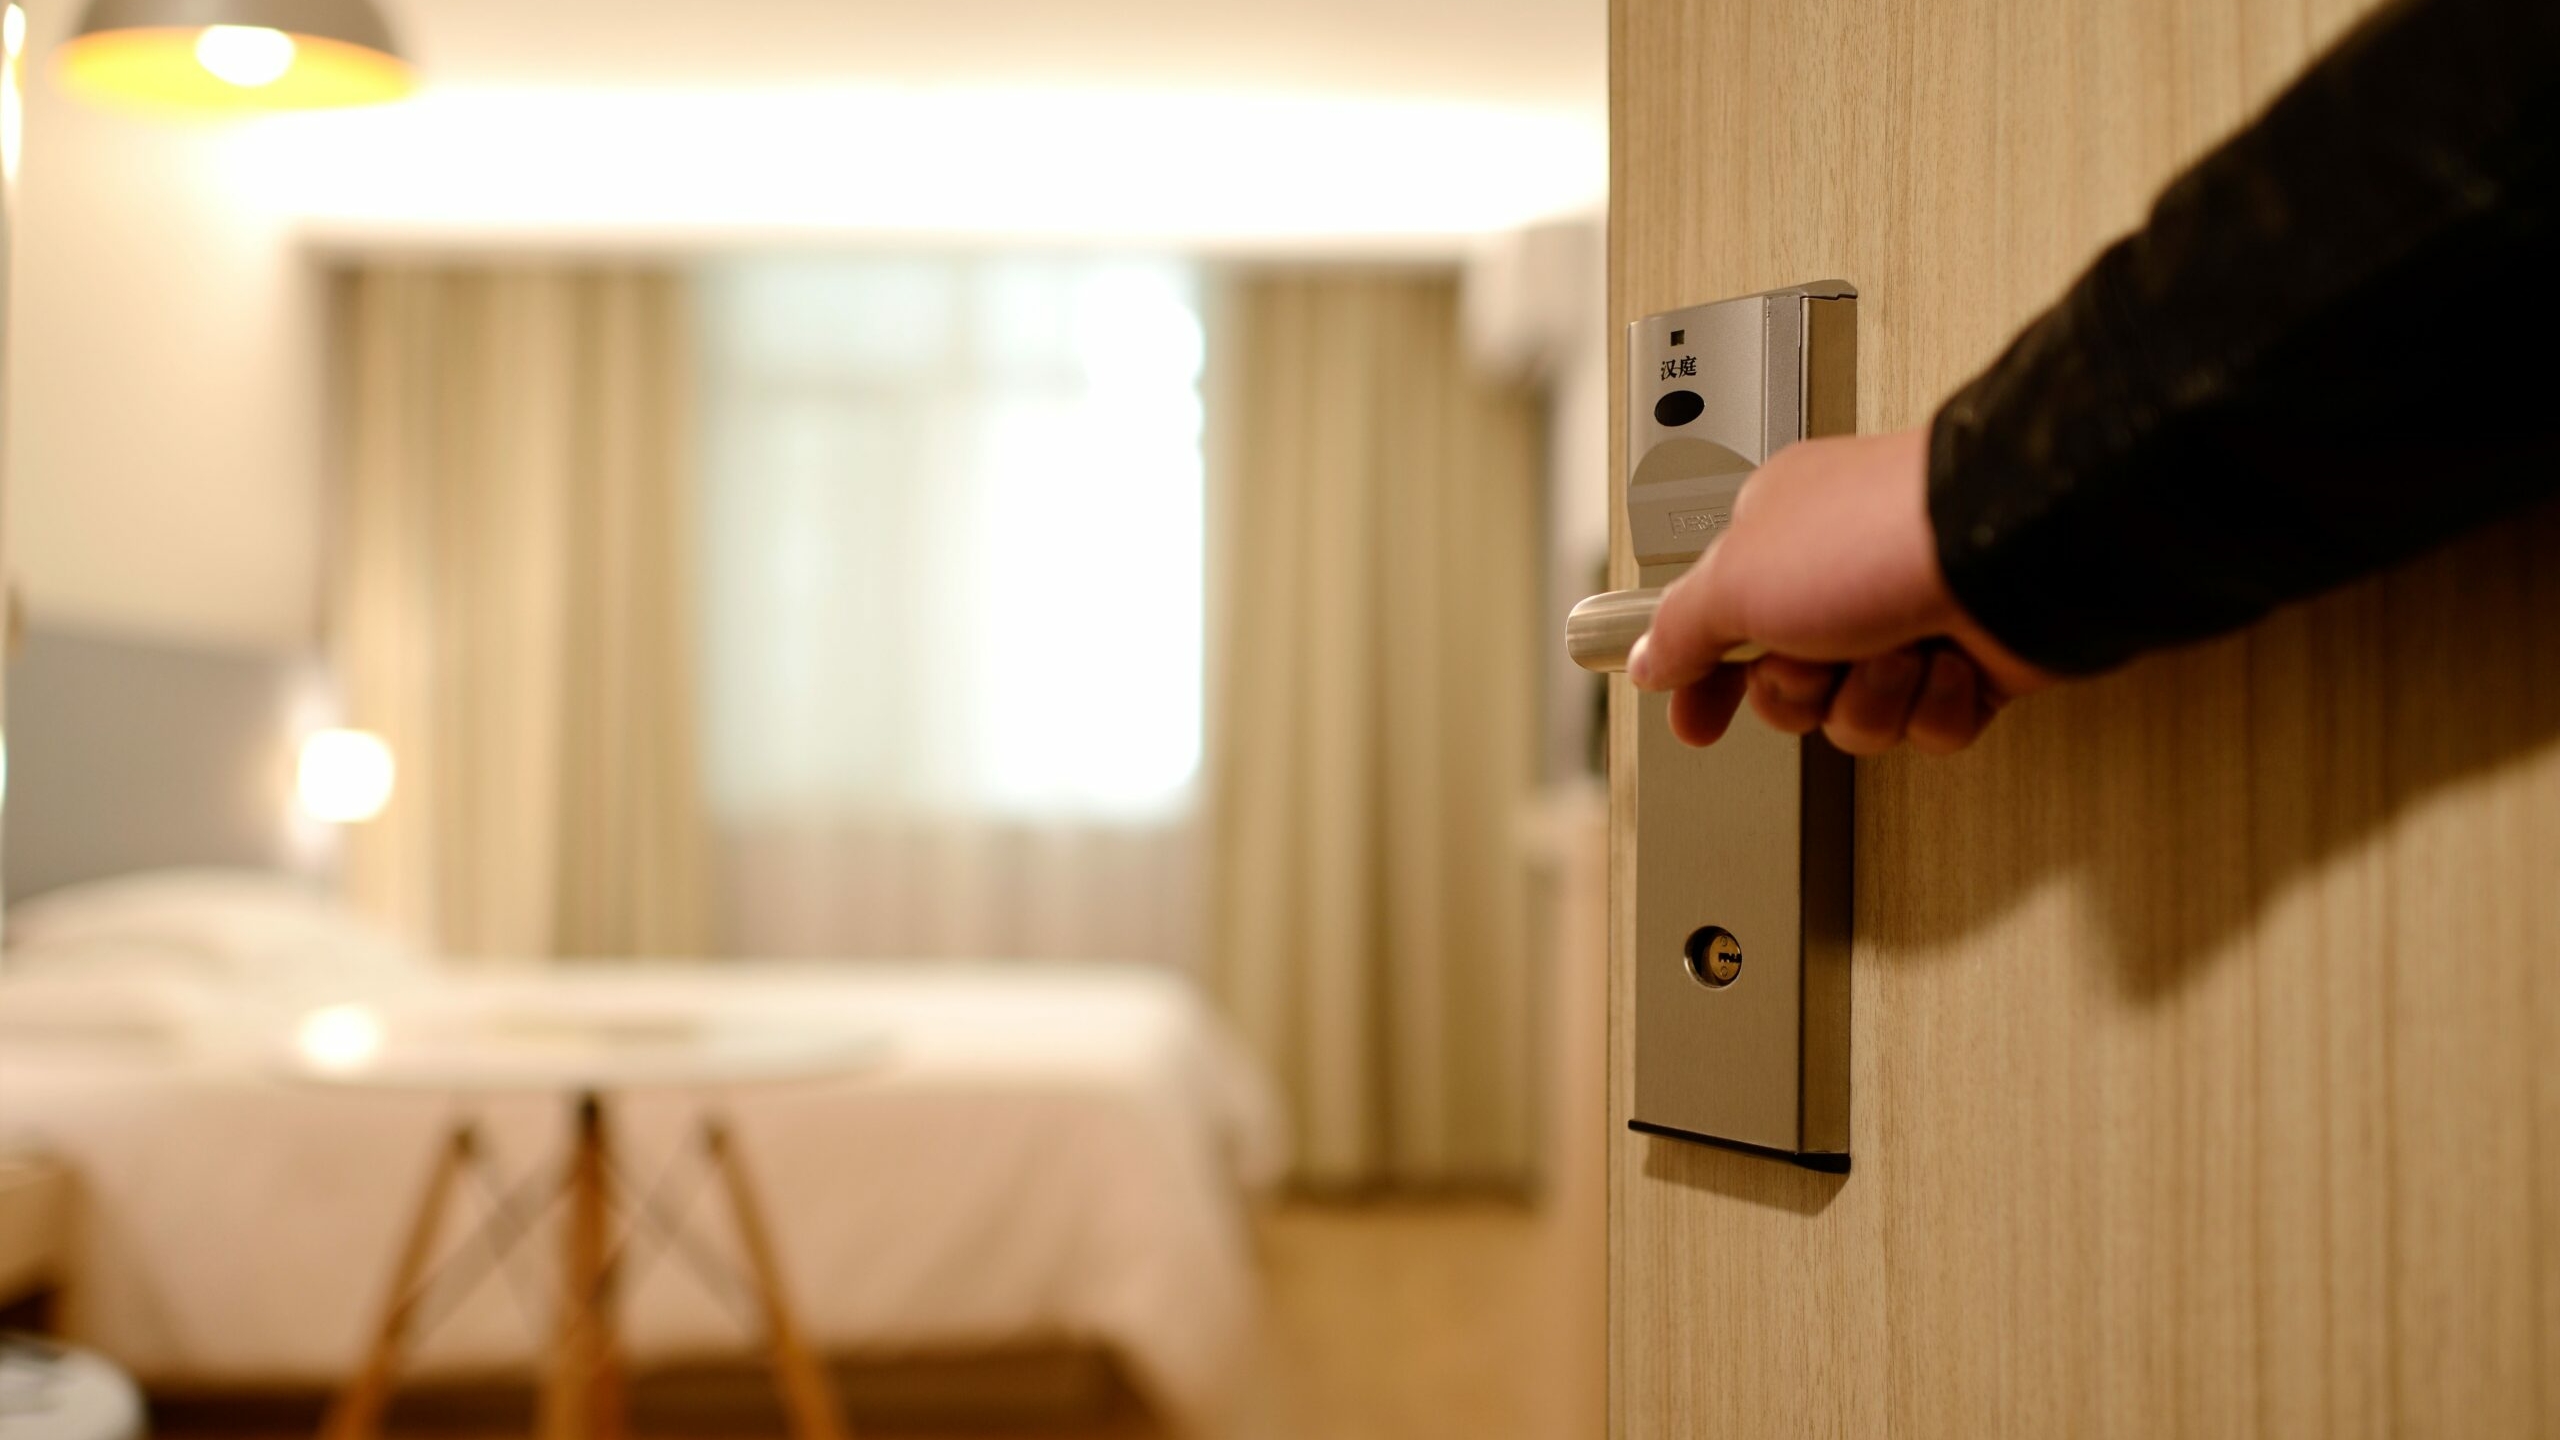 Бизнесмен заплатит полмиллиона петербургской гостинице за испачканный кровью номер